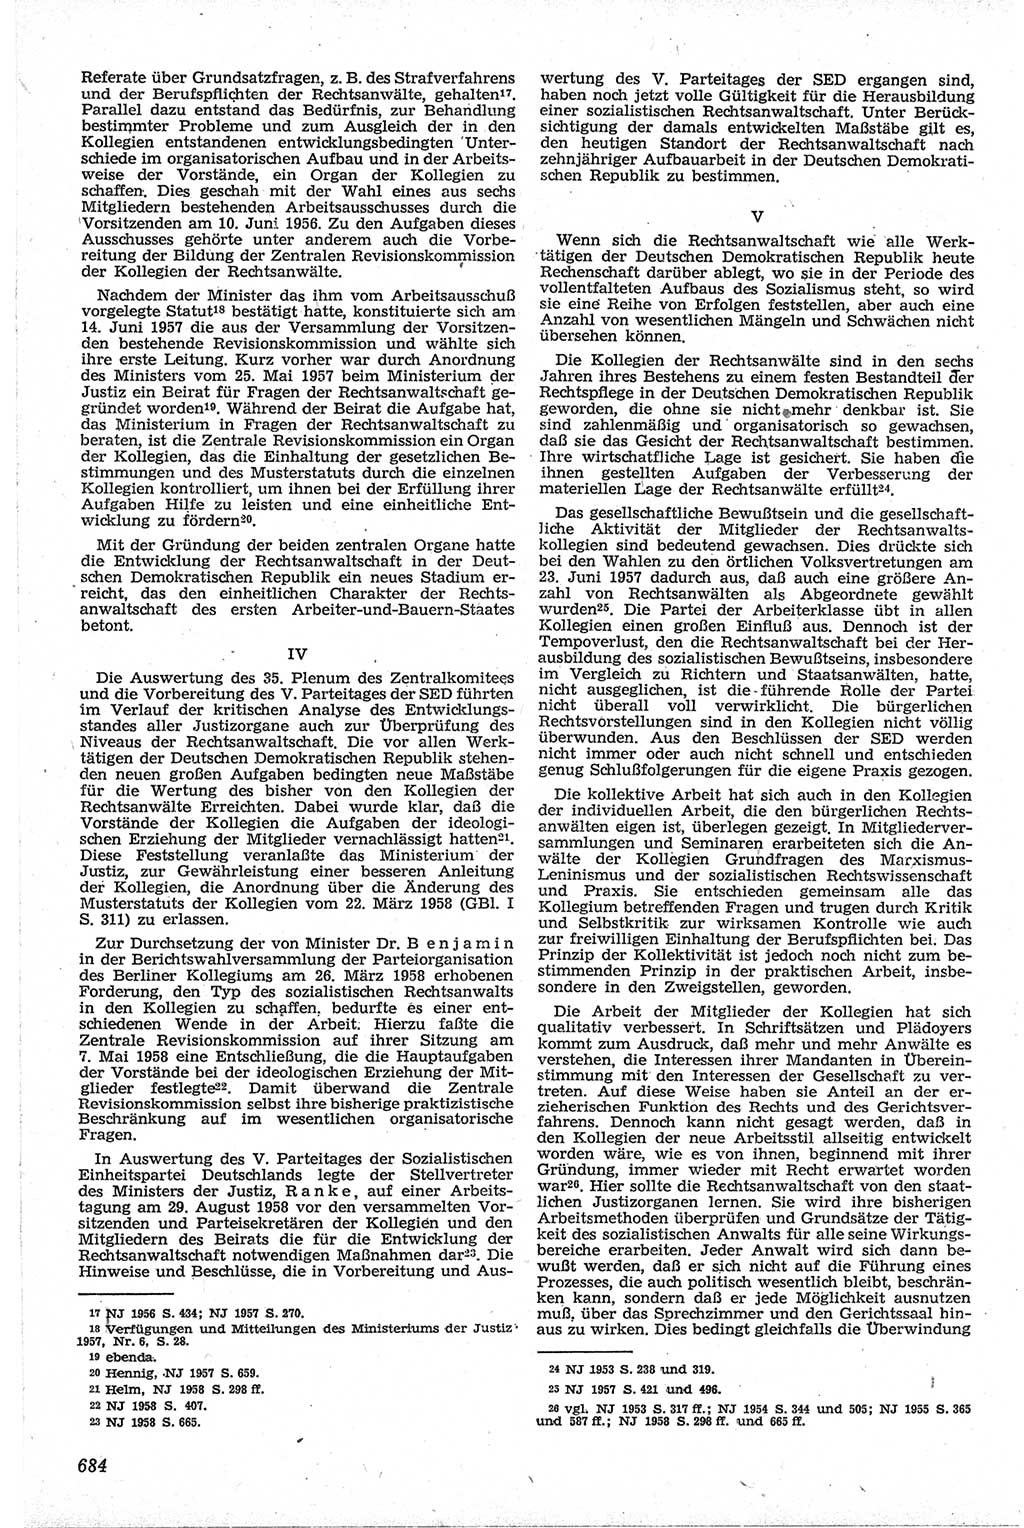 Neue Justiz (NJ), Zeitschrift für Recht und Rechtswissenschaft [Deutsche Demokratische Republik (DDR)], 13. Jahrgang 1959, Seite 684 (NJ DDR 1959, S. 684)